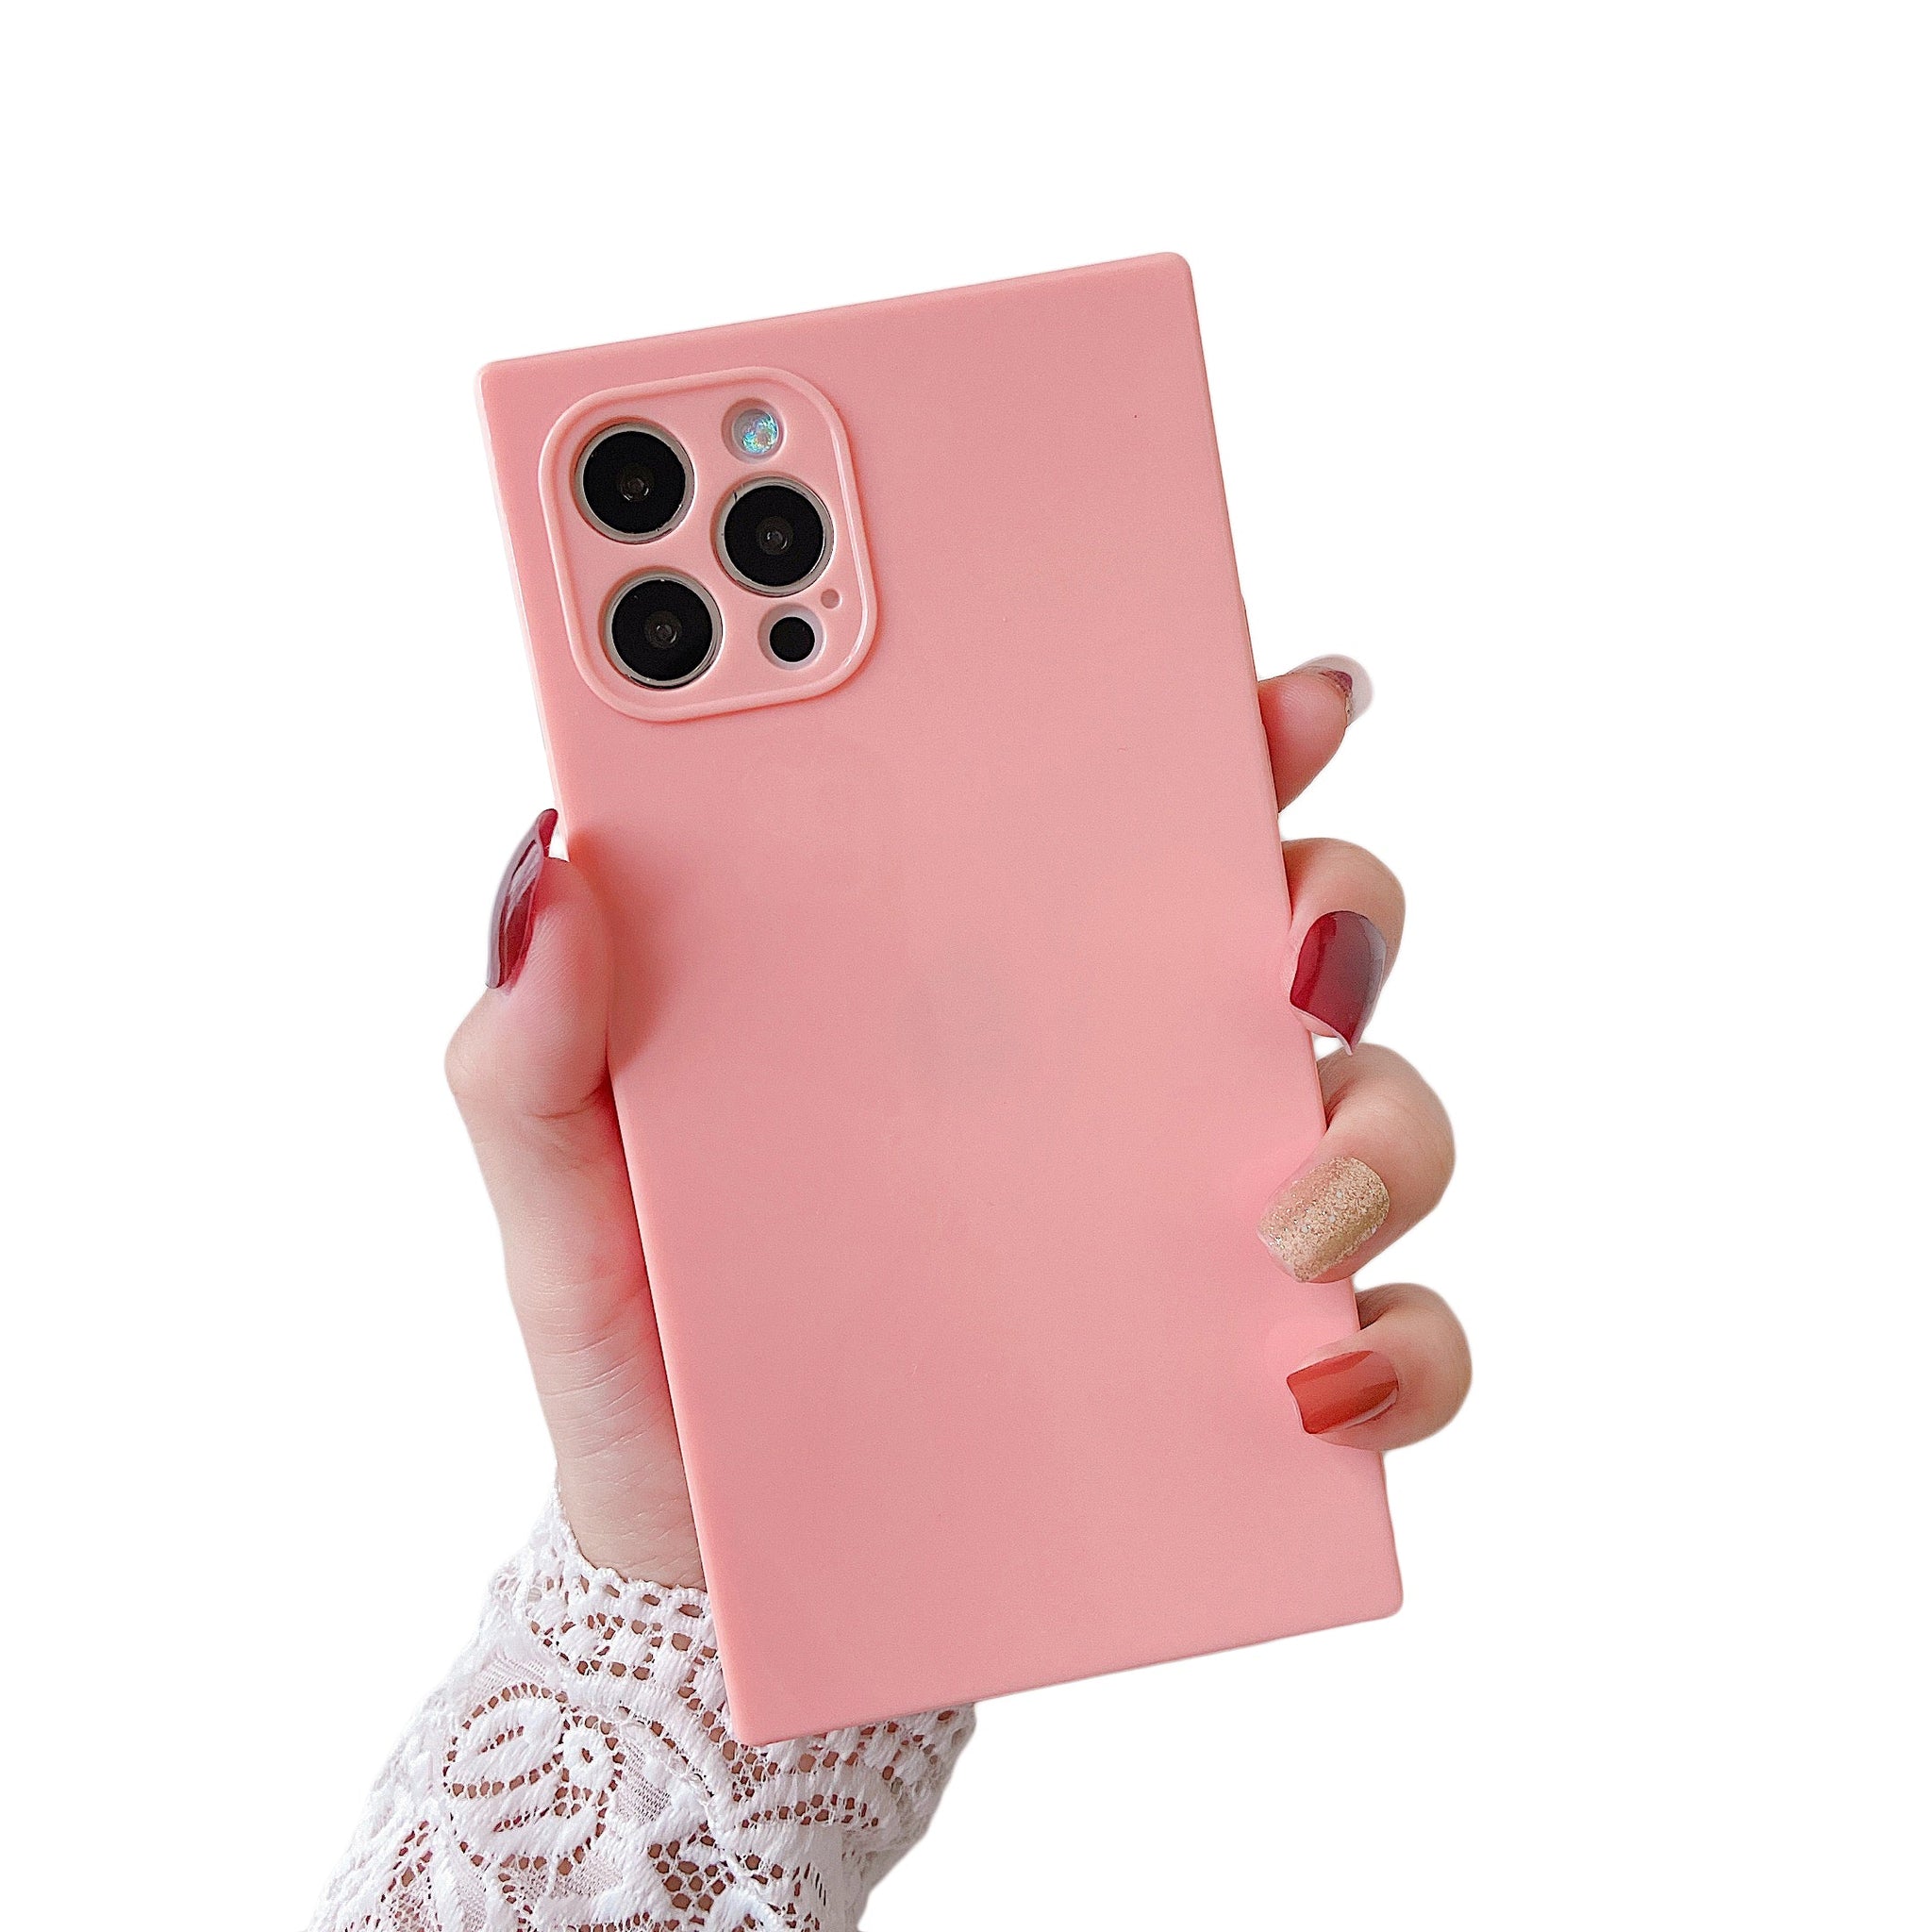 iPhone 12 Pro Max Case Square Plain Color (Pink)